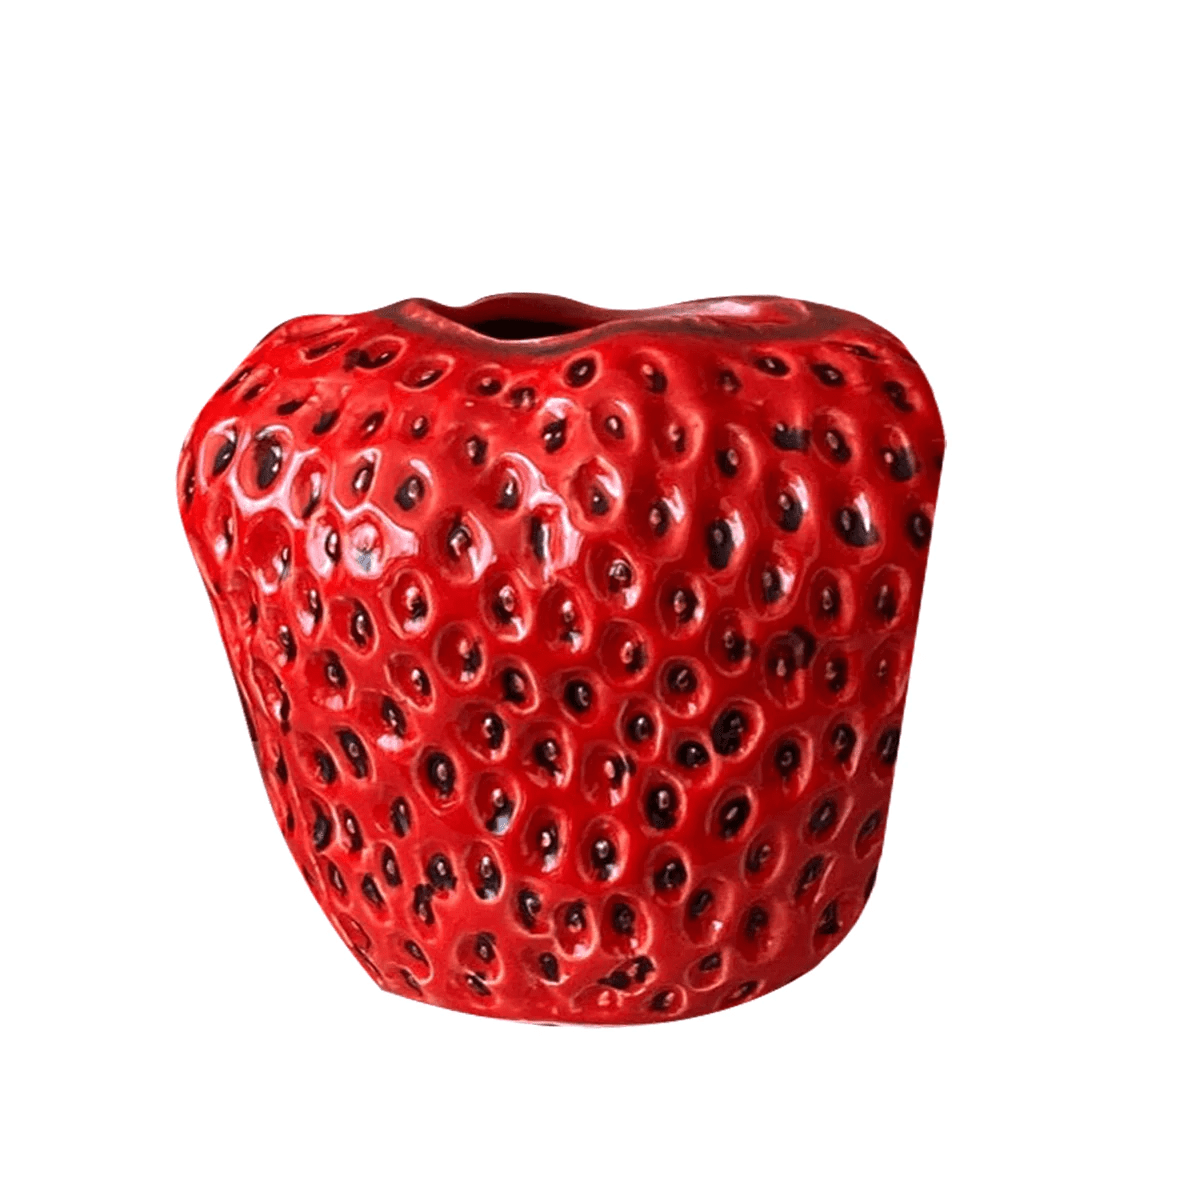 A 12cm strawberry vase